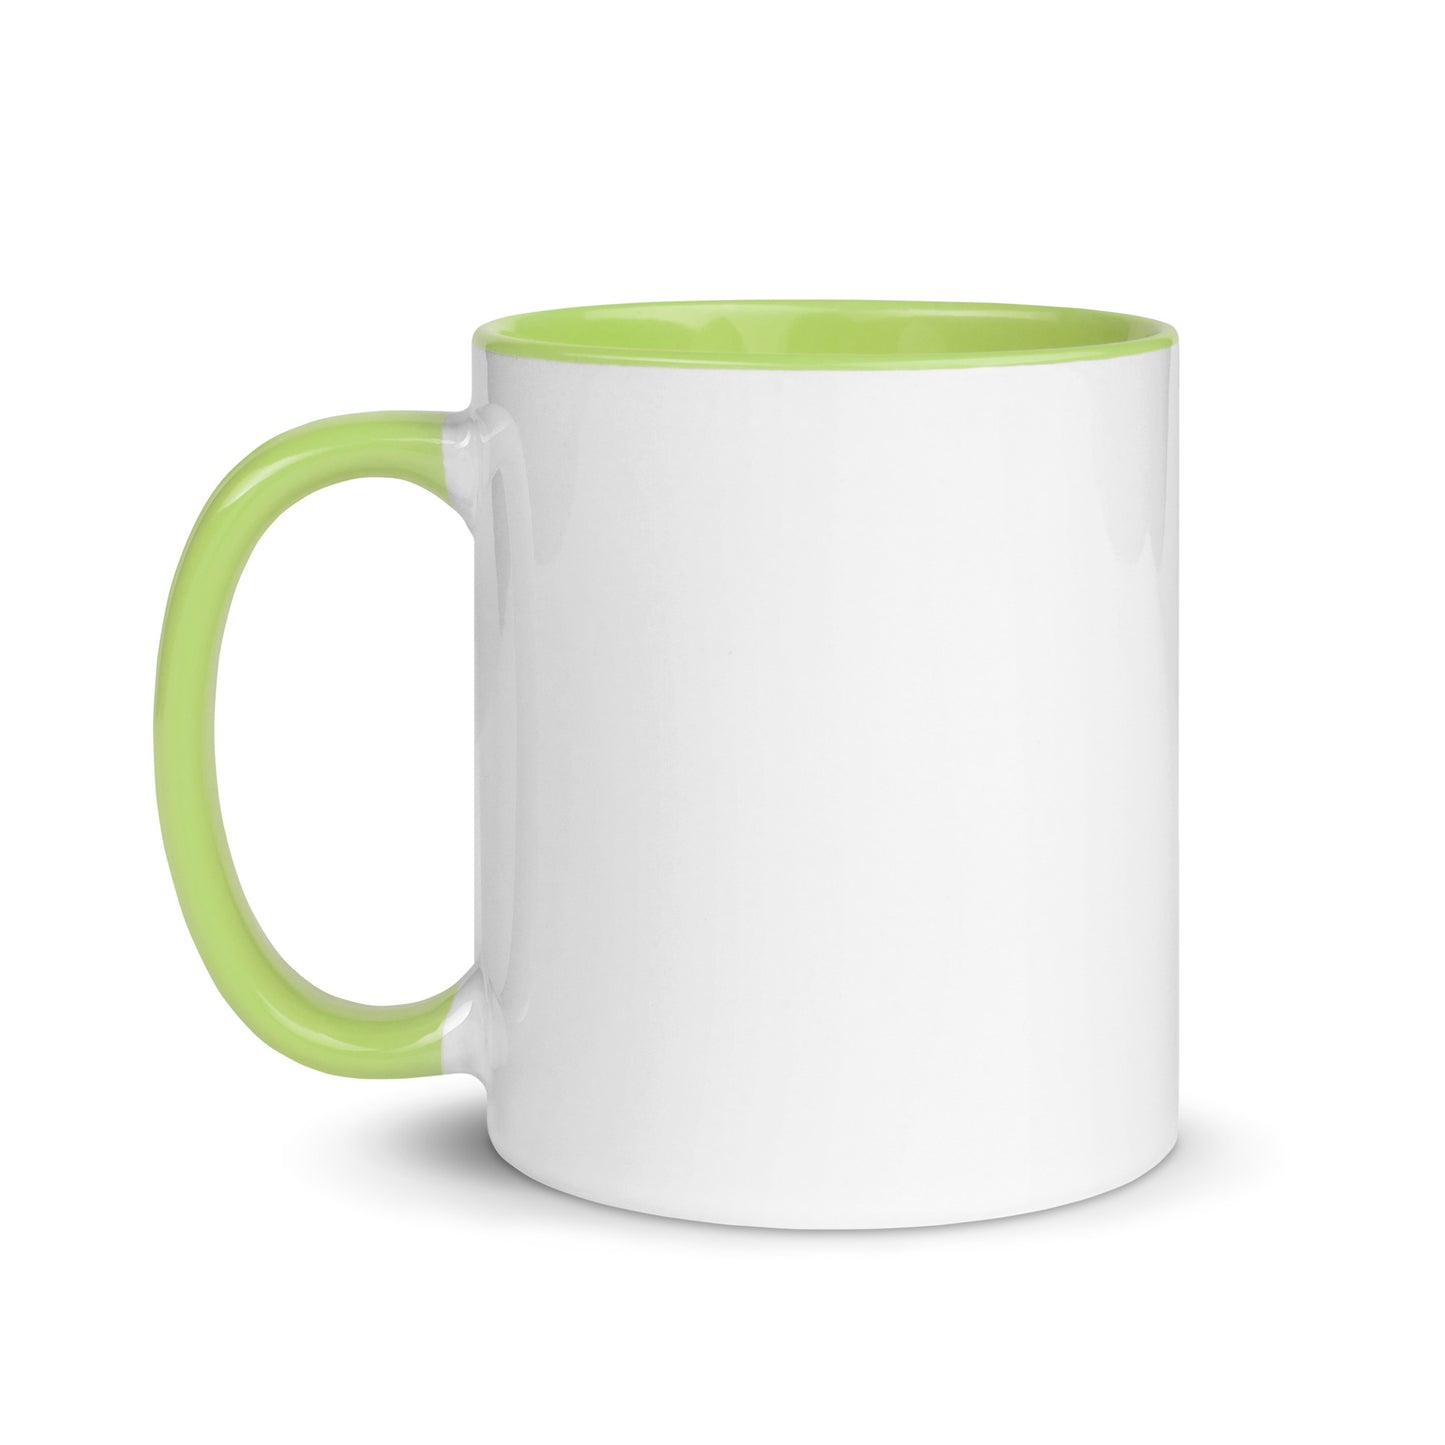 wake and bake mug funny weed gift 420 mary jane gift christmas green mug with handle twice as nice 840 stoner 